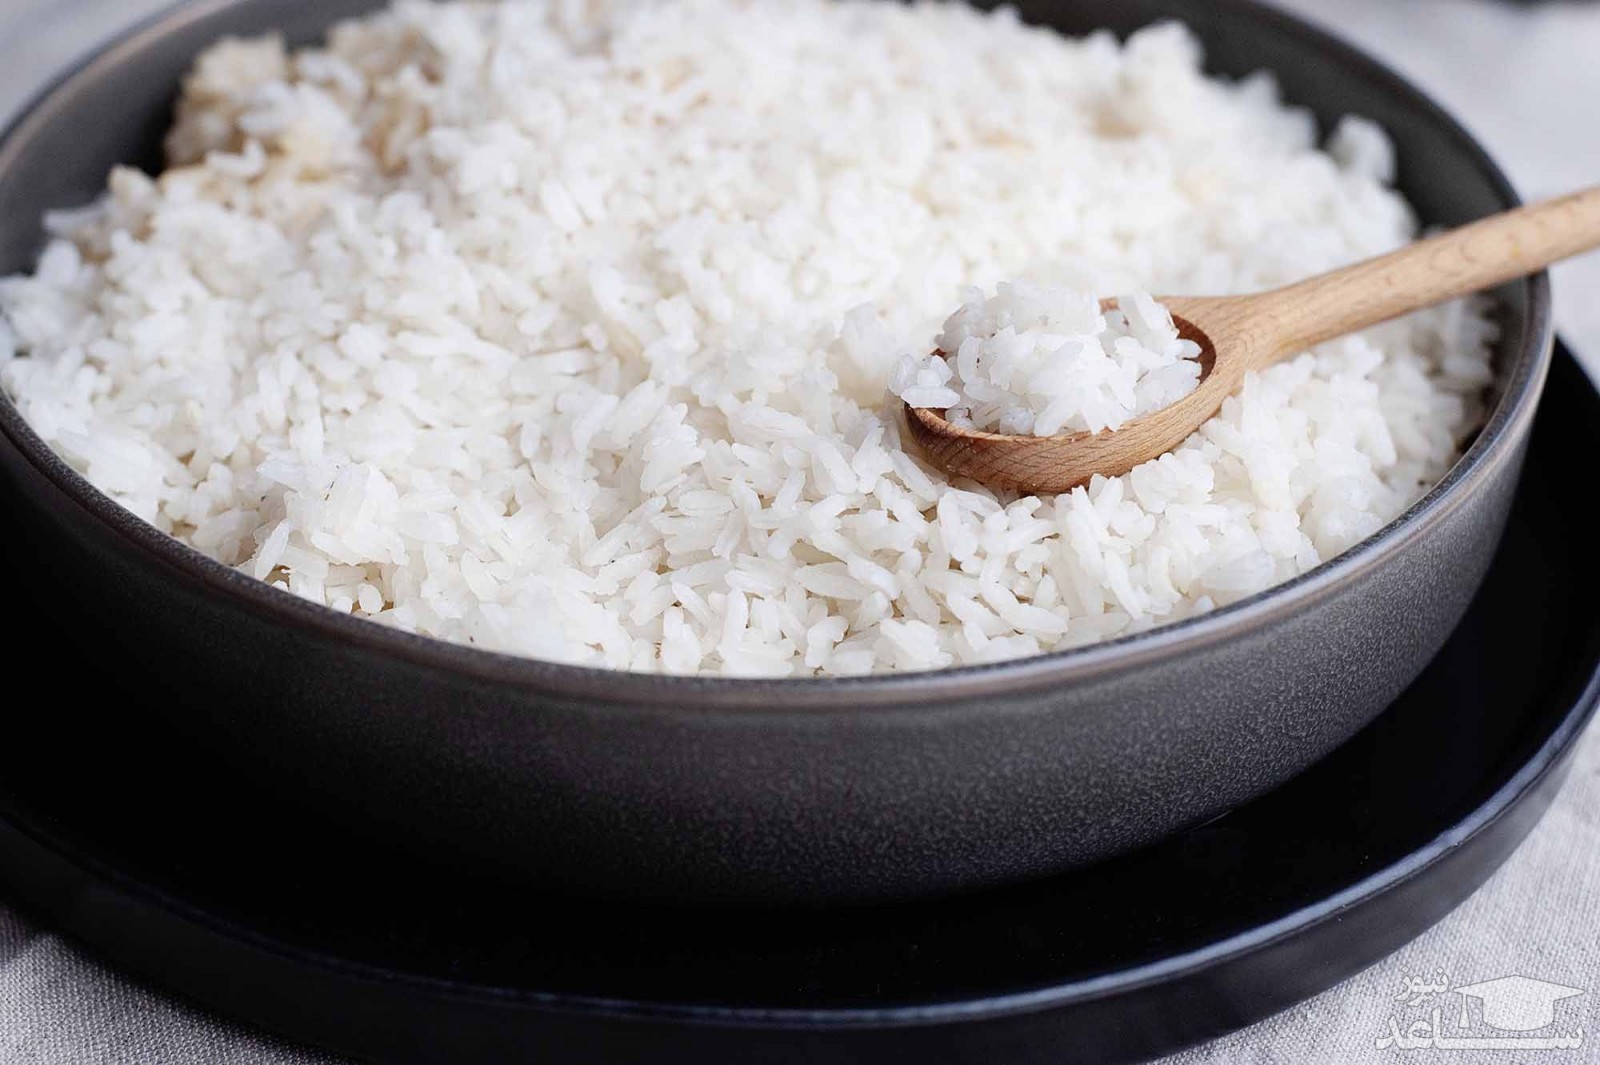  تهیه برنج با ماکروویو